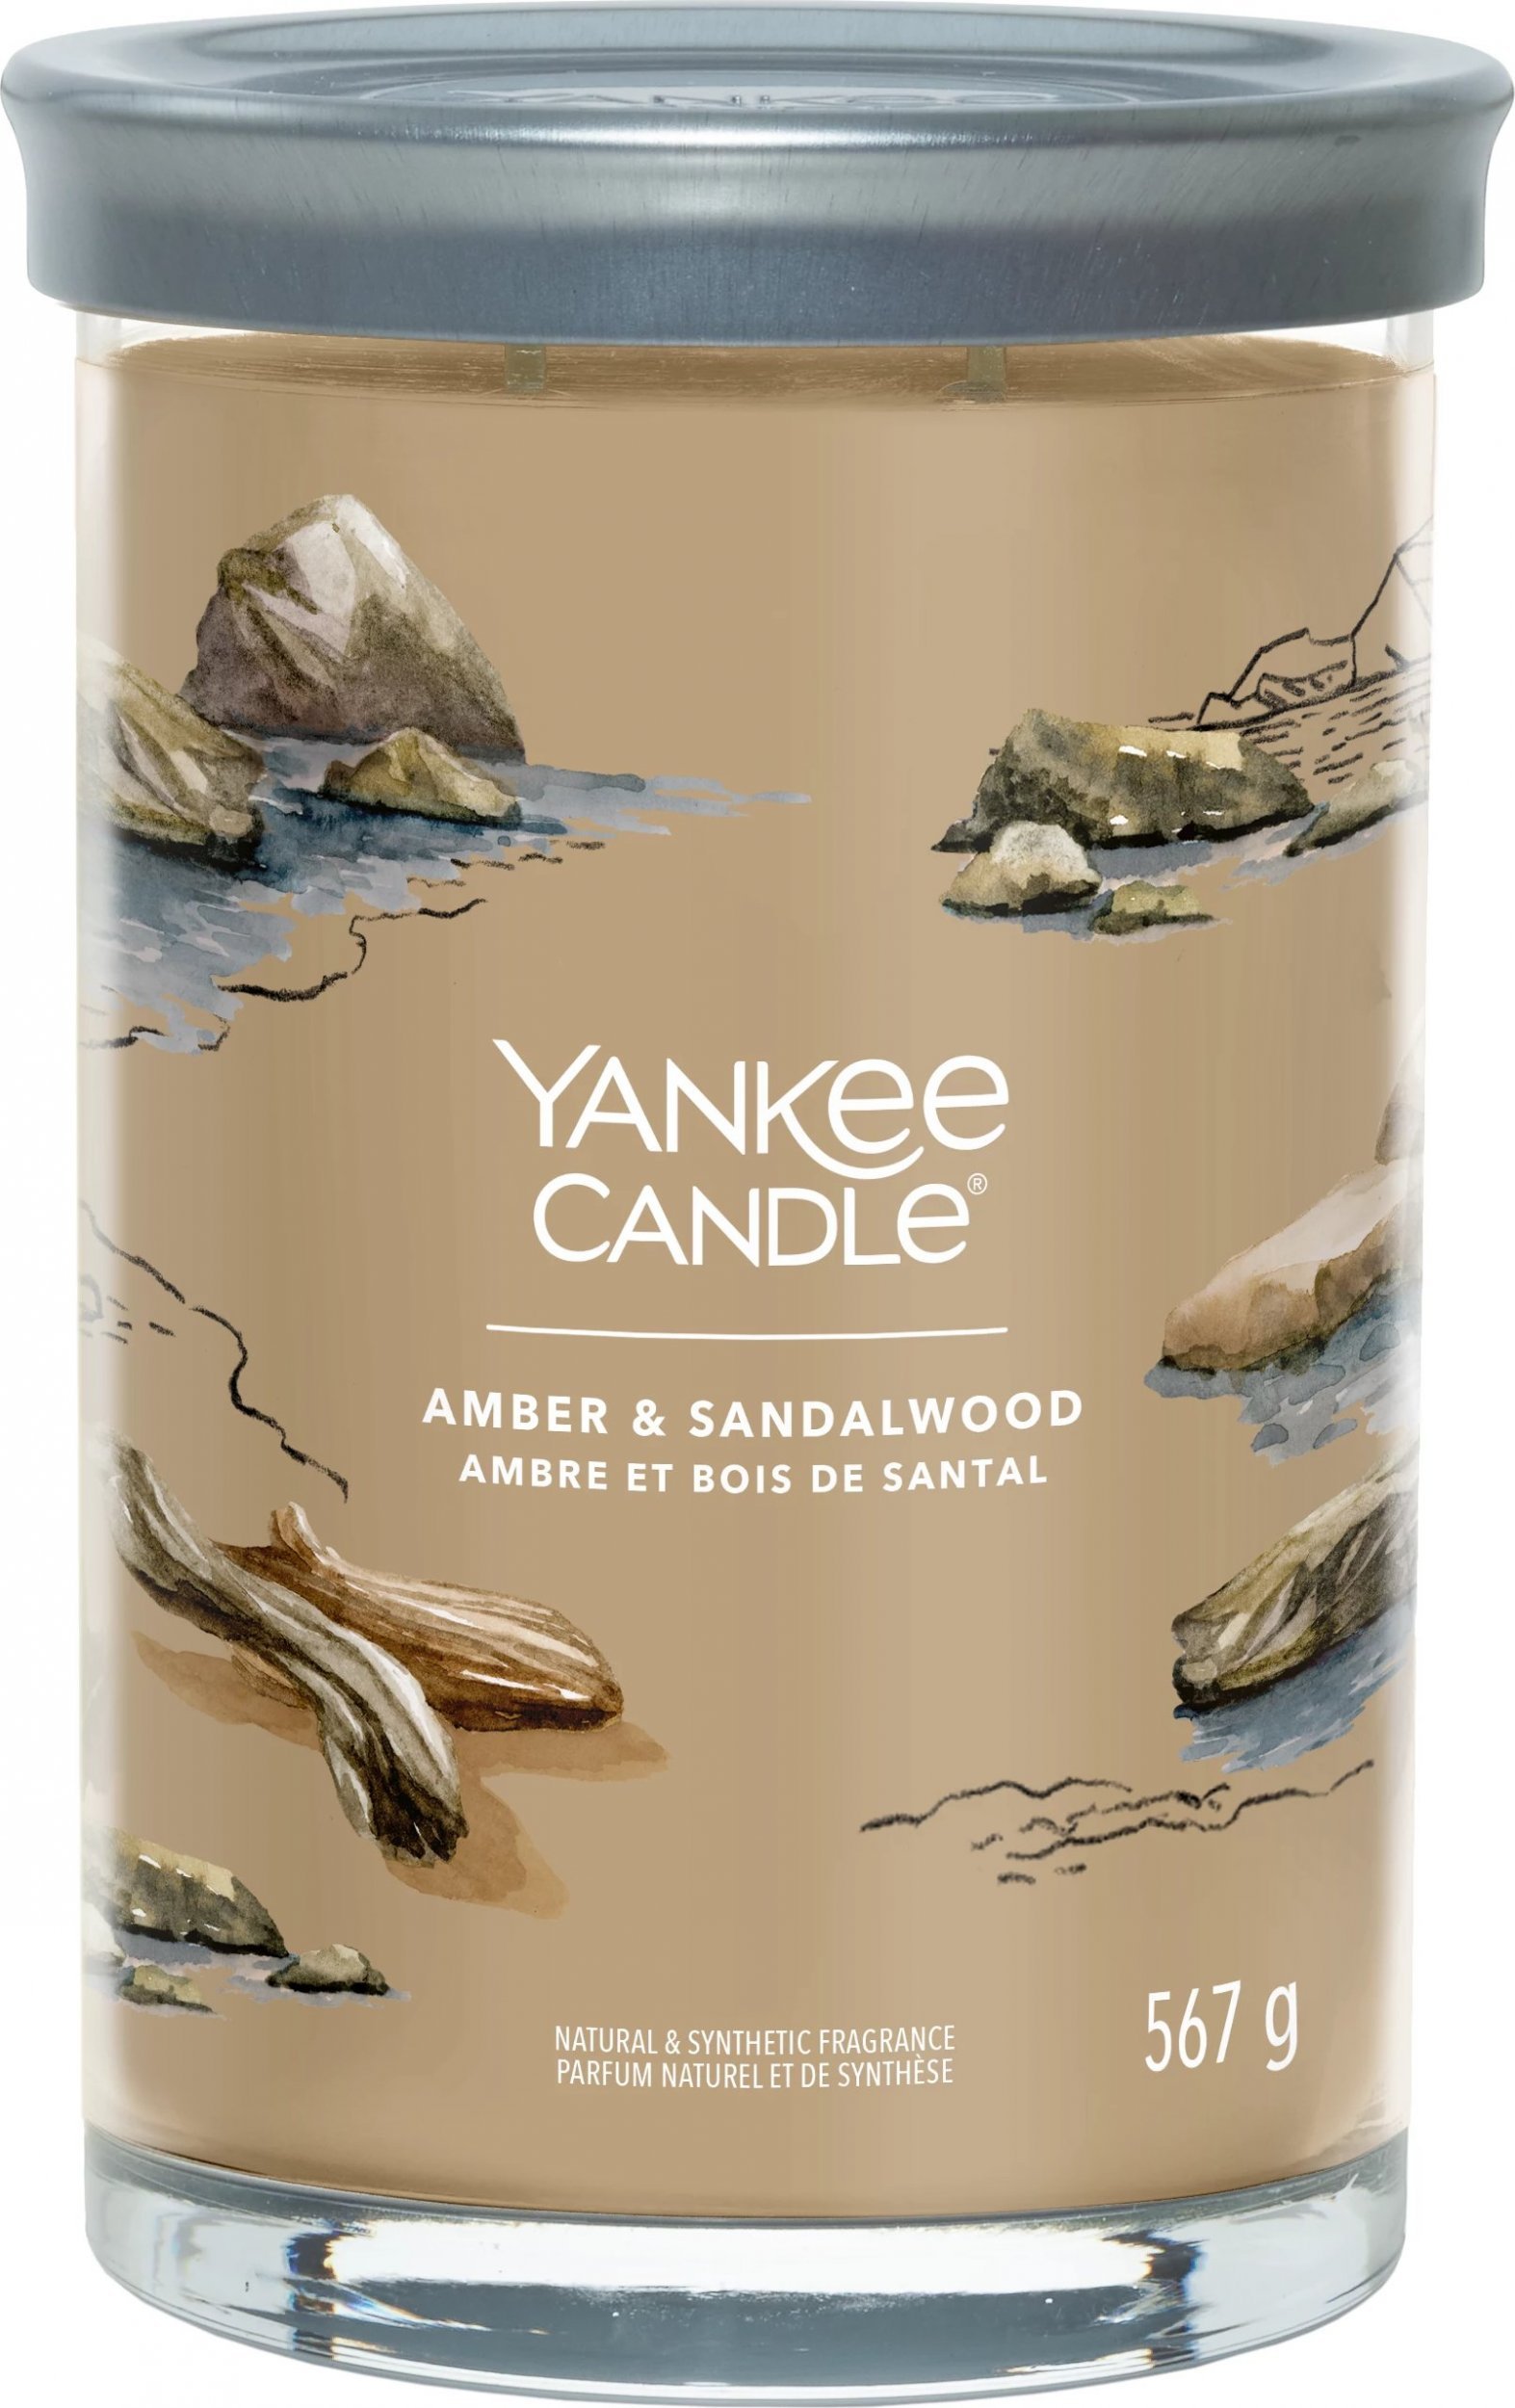 Yankee Candle Pahar Yankee Candle Signature Amber & Sandalwood 567g